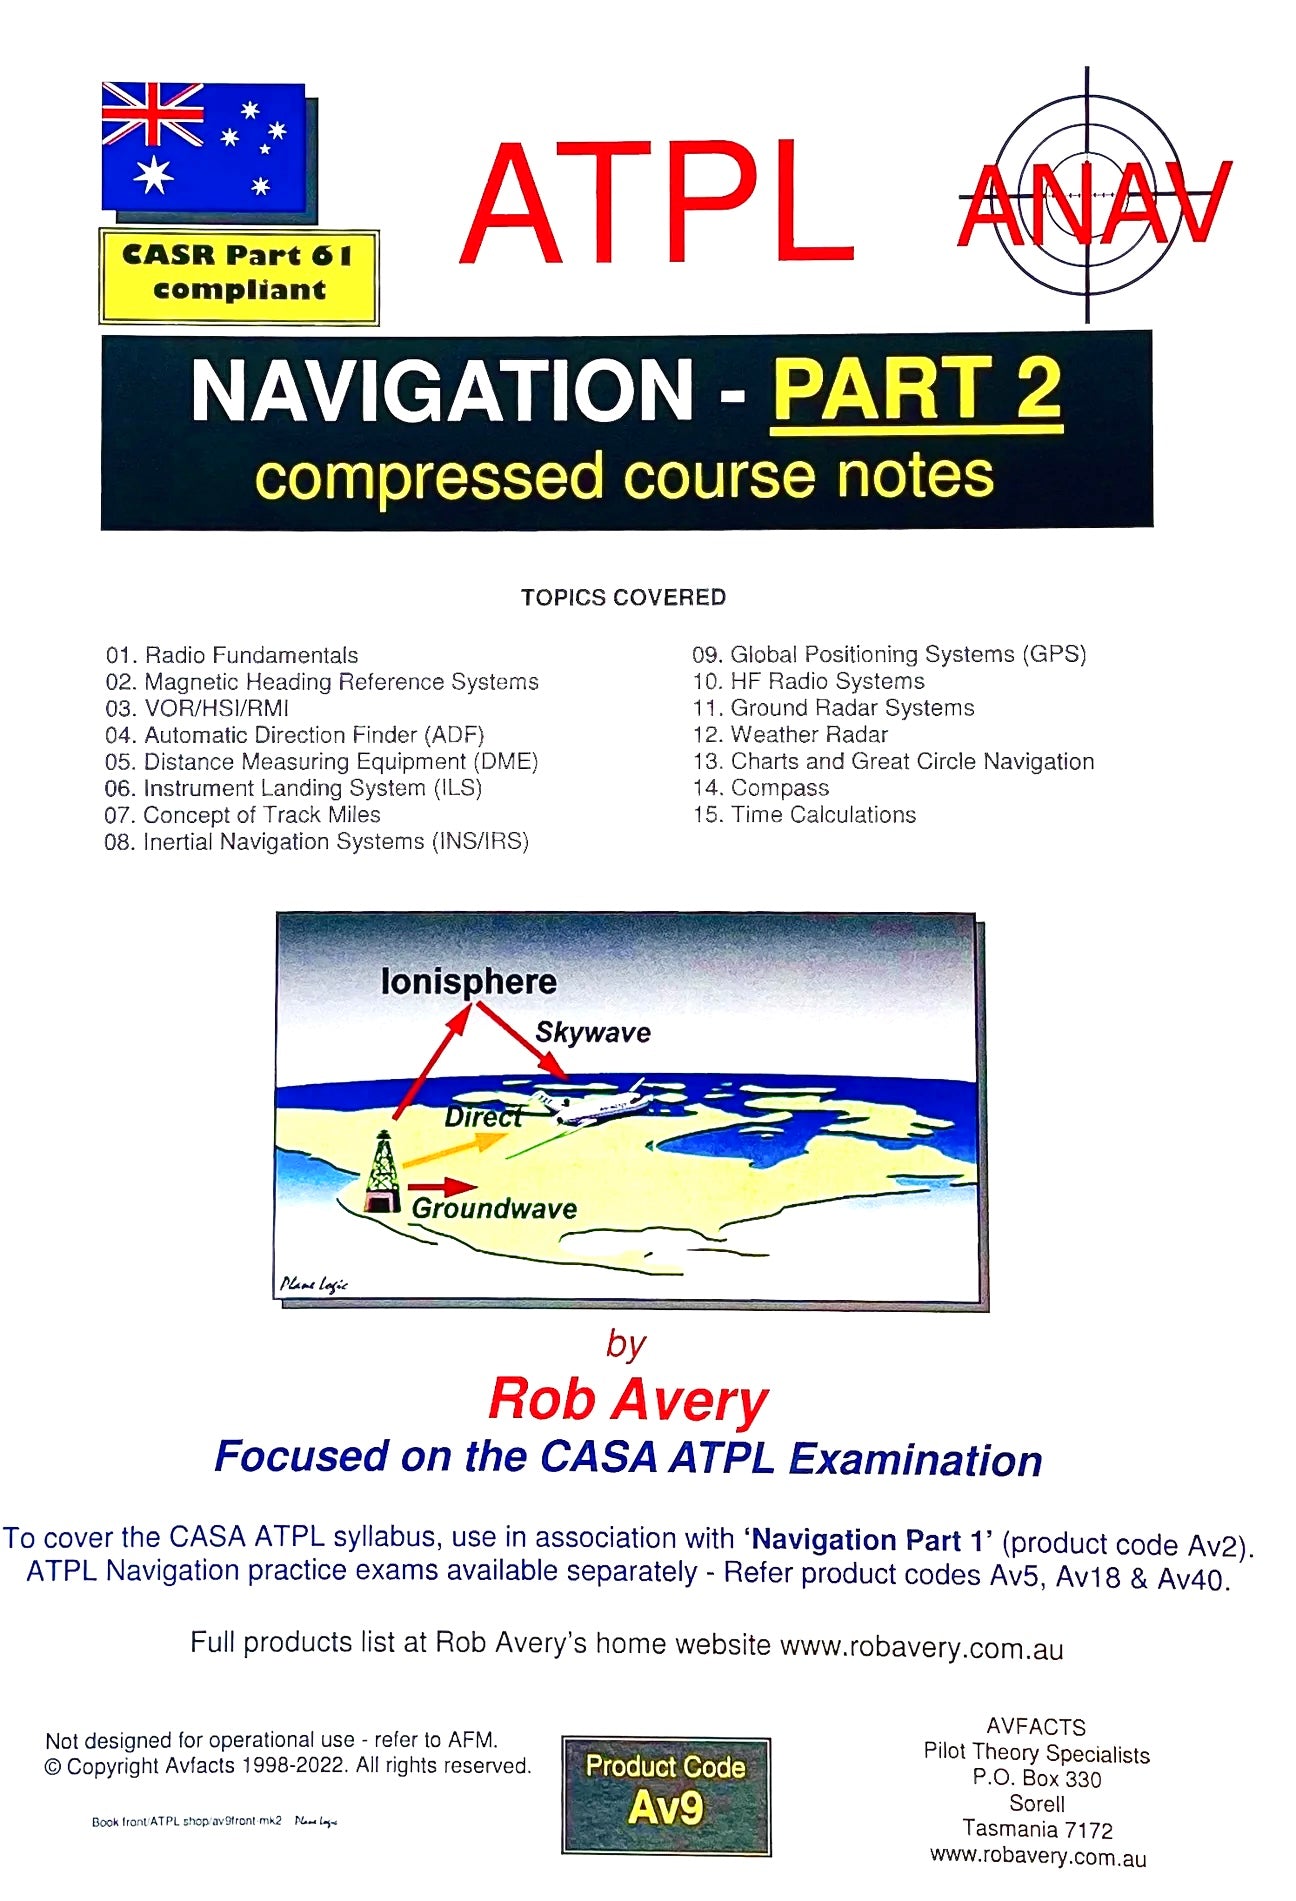 Avfacts by Rob Avery ATPL Navigation Part 2 - AV9